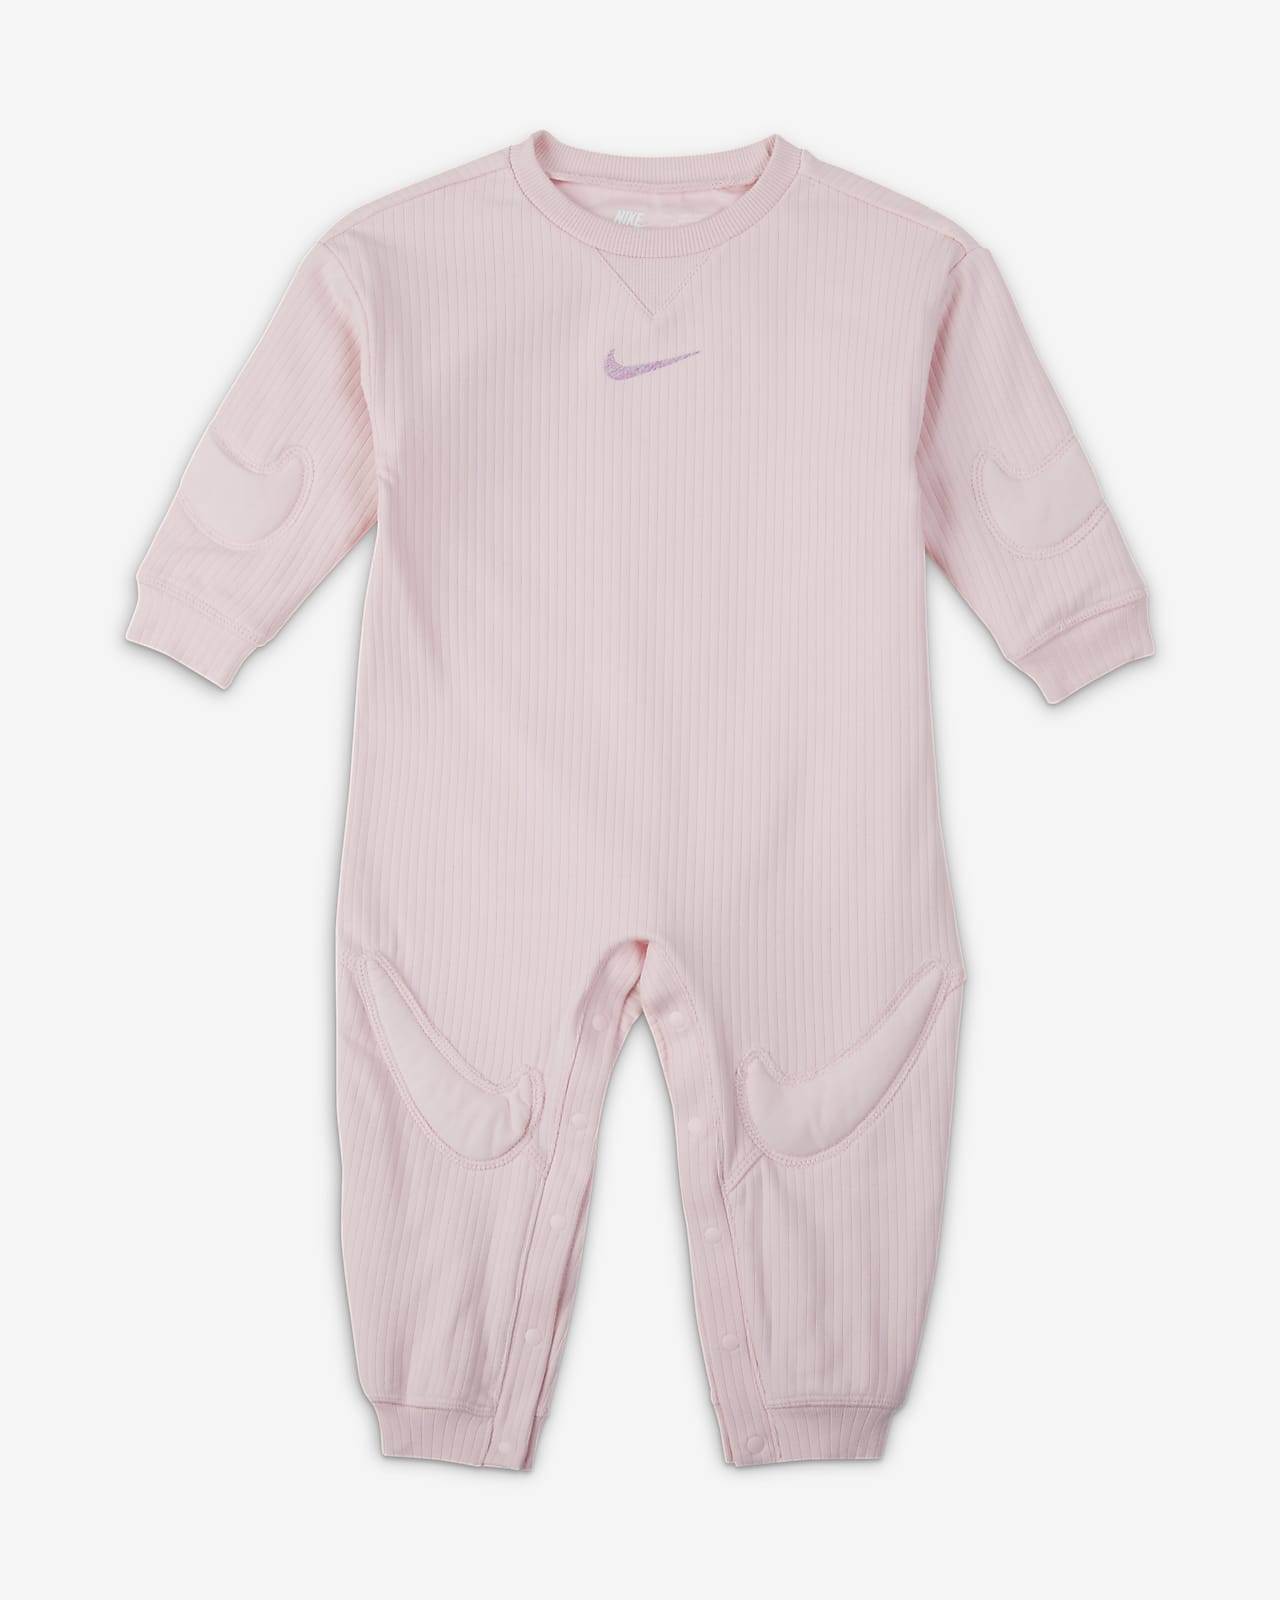 Macacão Nike "Ready, Set" para bebé